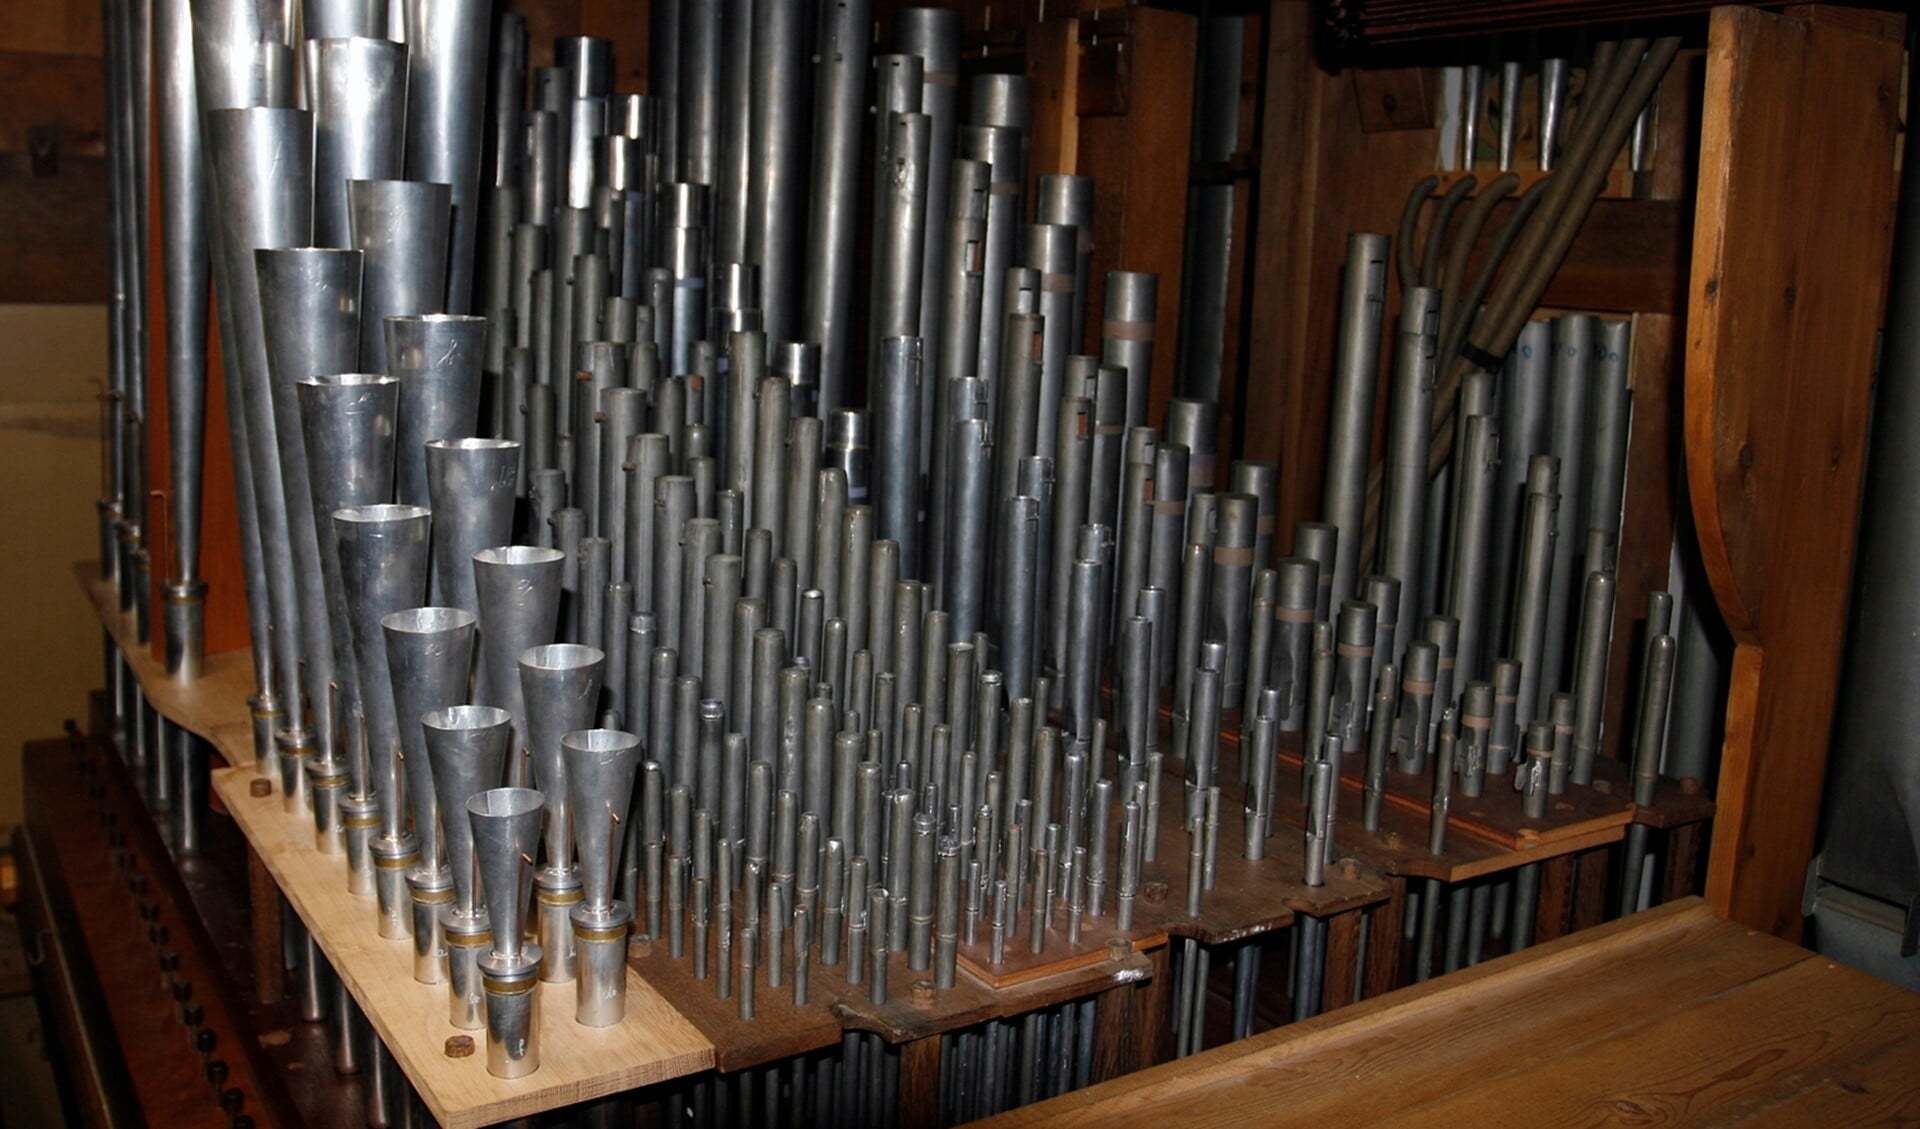 Het orgel dat Wilfred Folmer gaat bespelen